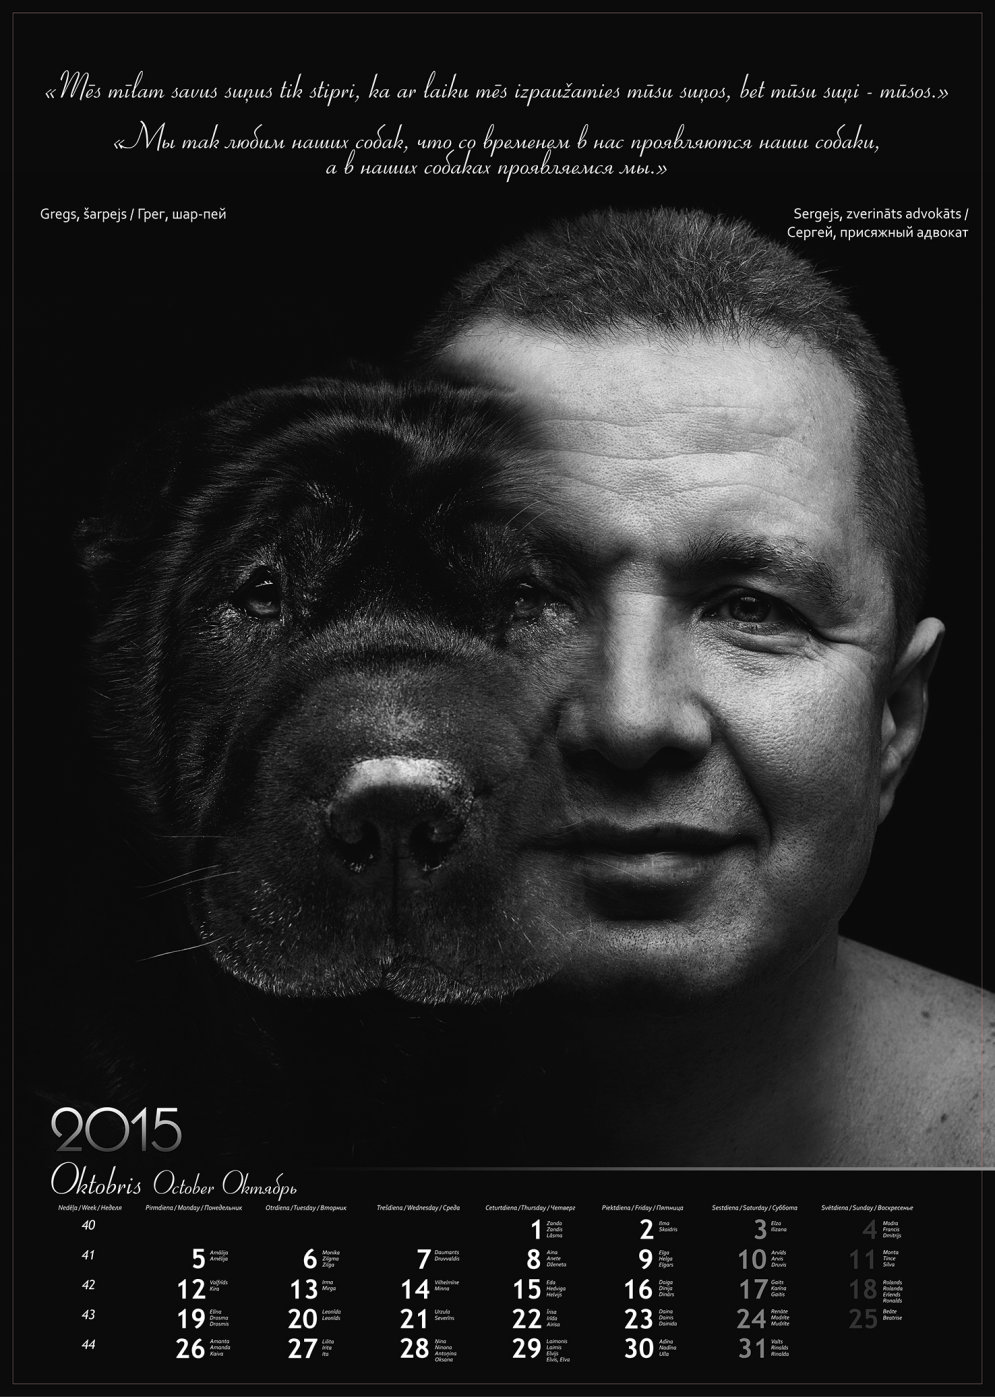 Сделано в Латвии и с любовью: благотворительный календарь в помощь собачьим приютам